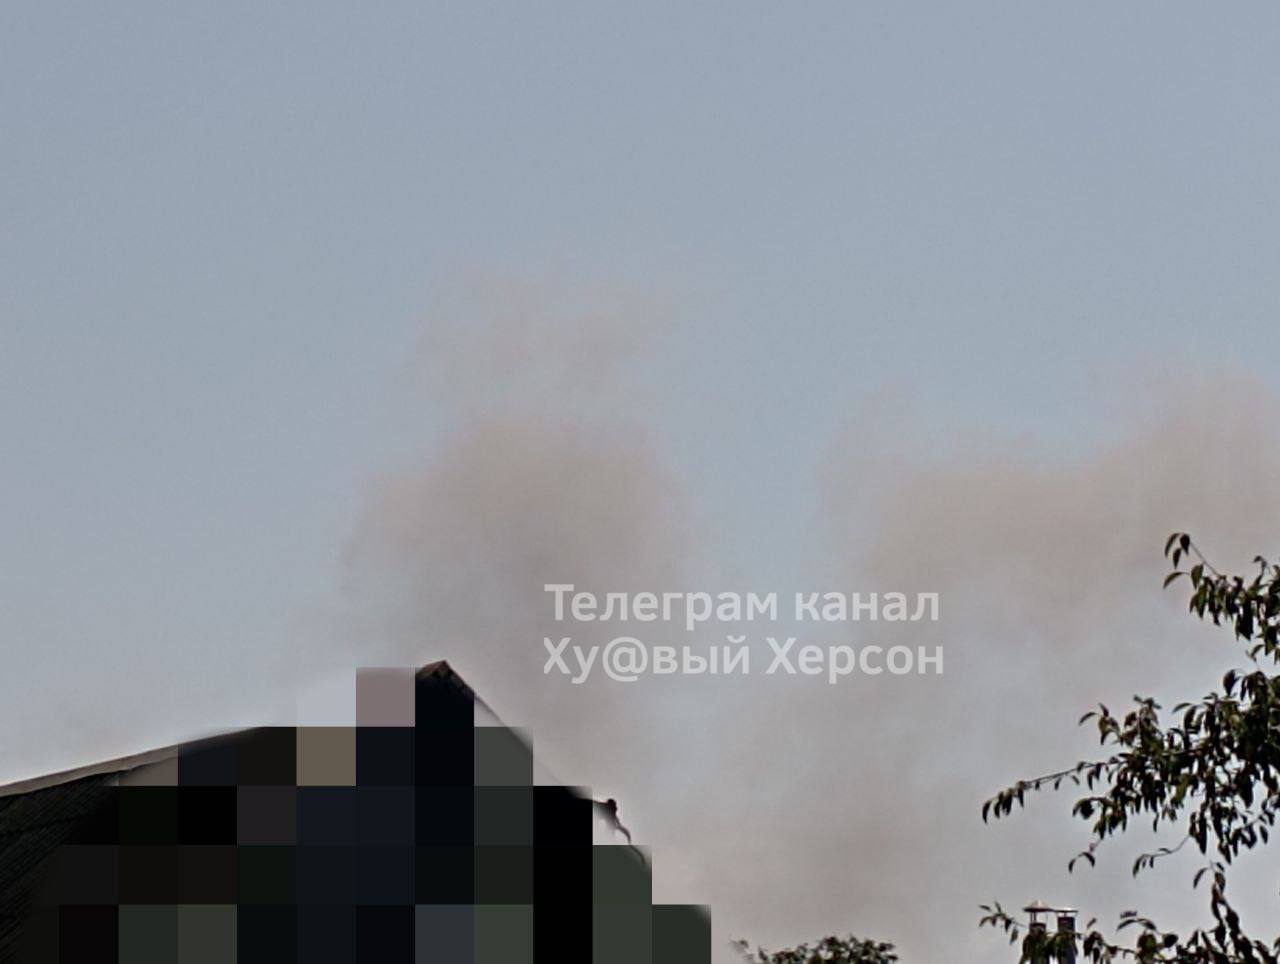 У Каховці влаштували чергову серію "бавовни": детонують ворожі боєприпаси, видно дим. Фото 